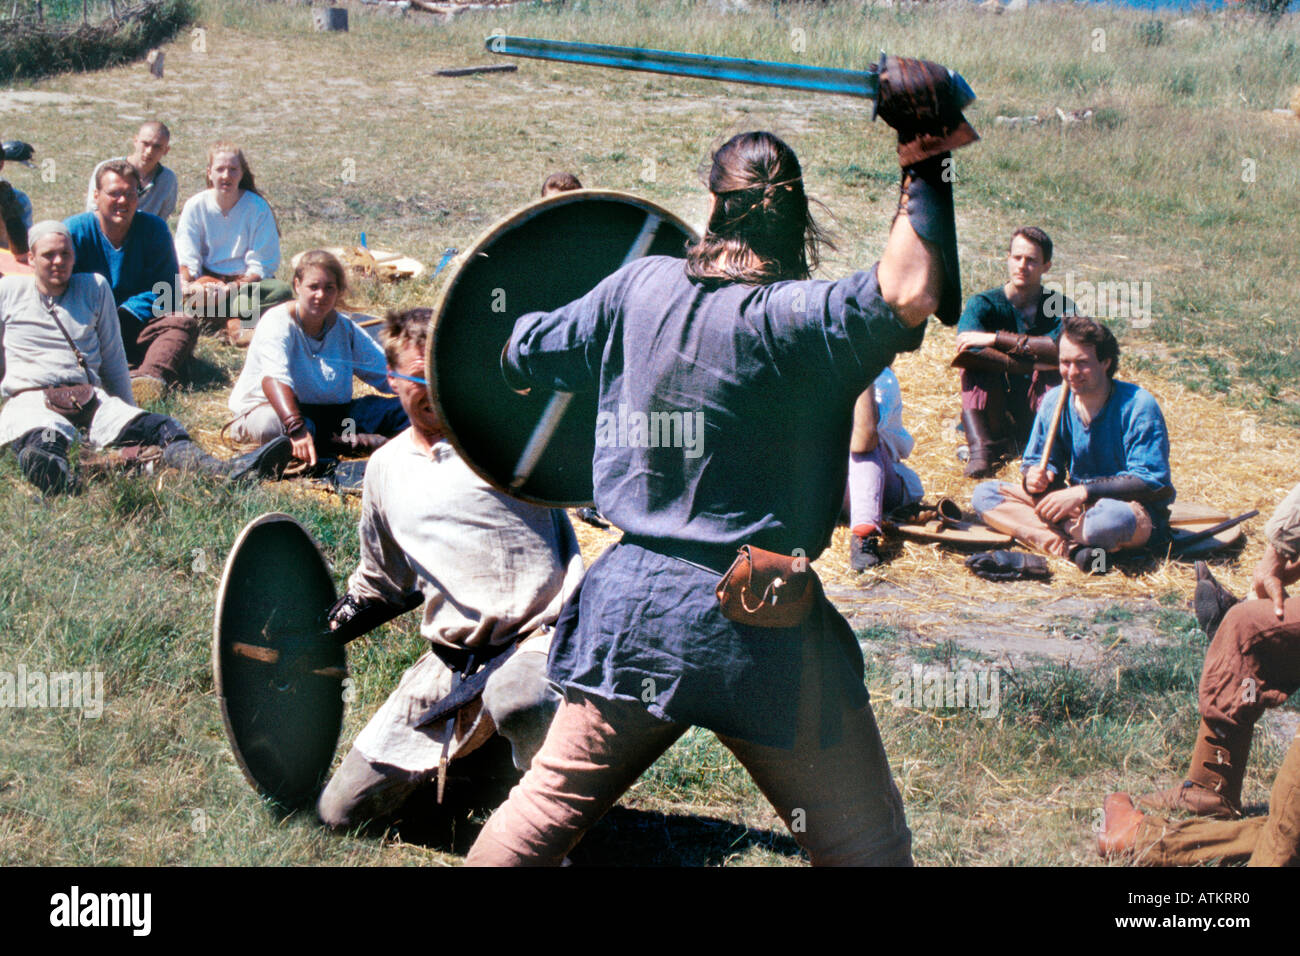 Vikings in a fierce duel Stock Photo